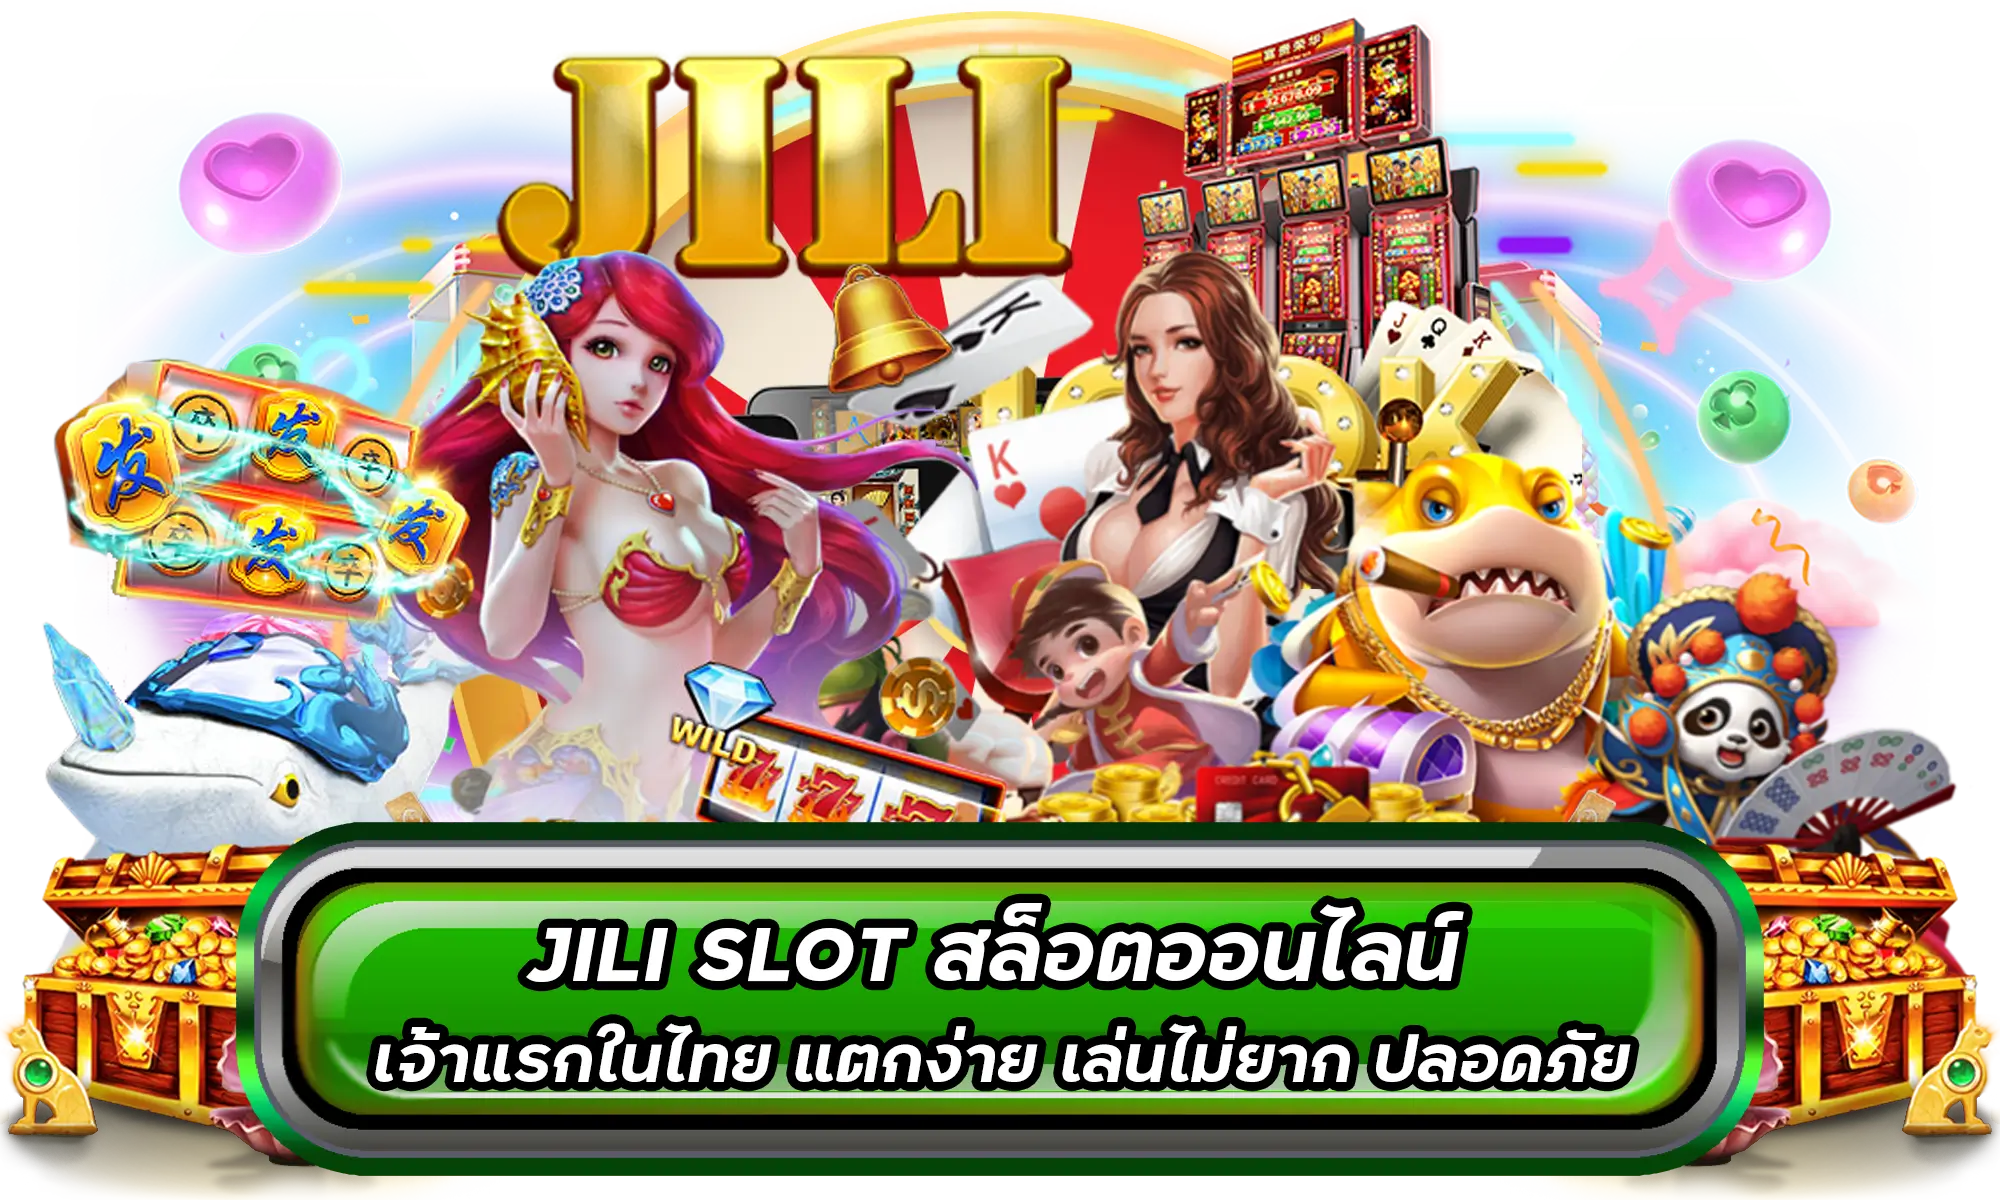 JILI SLOT สล็อตออนไลน์ เจ้าแรกในไทย แตกง่าย เล่นไม่ยาก ปลอดภัย